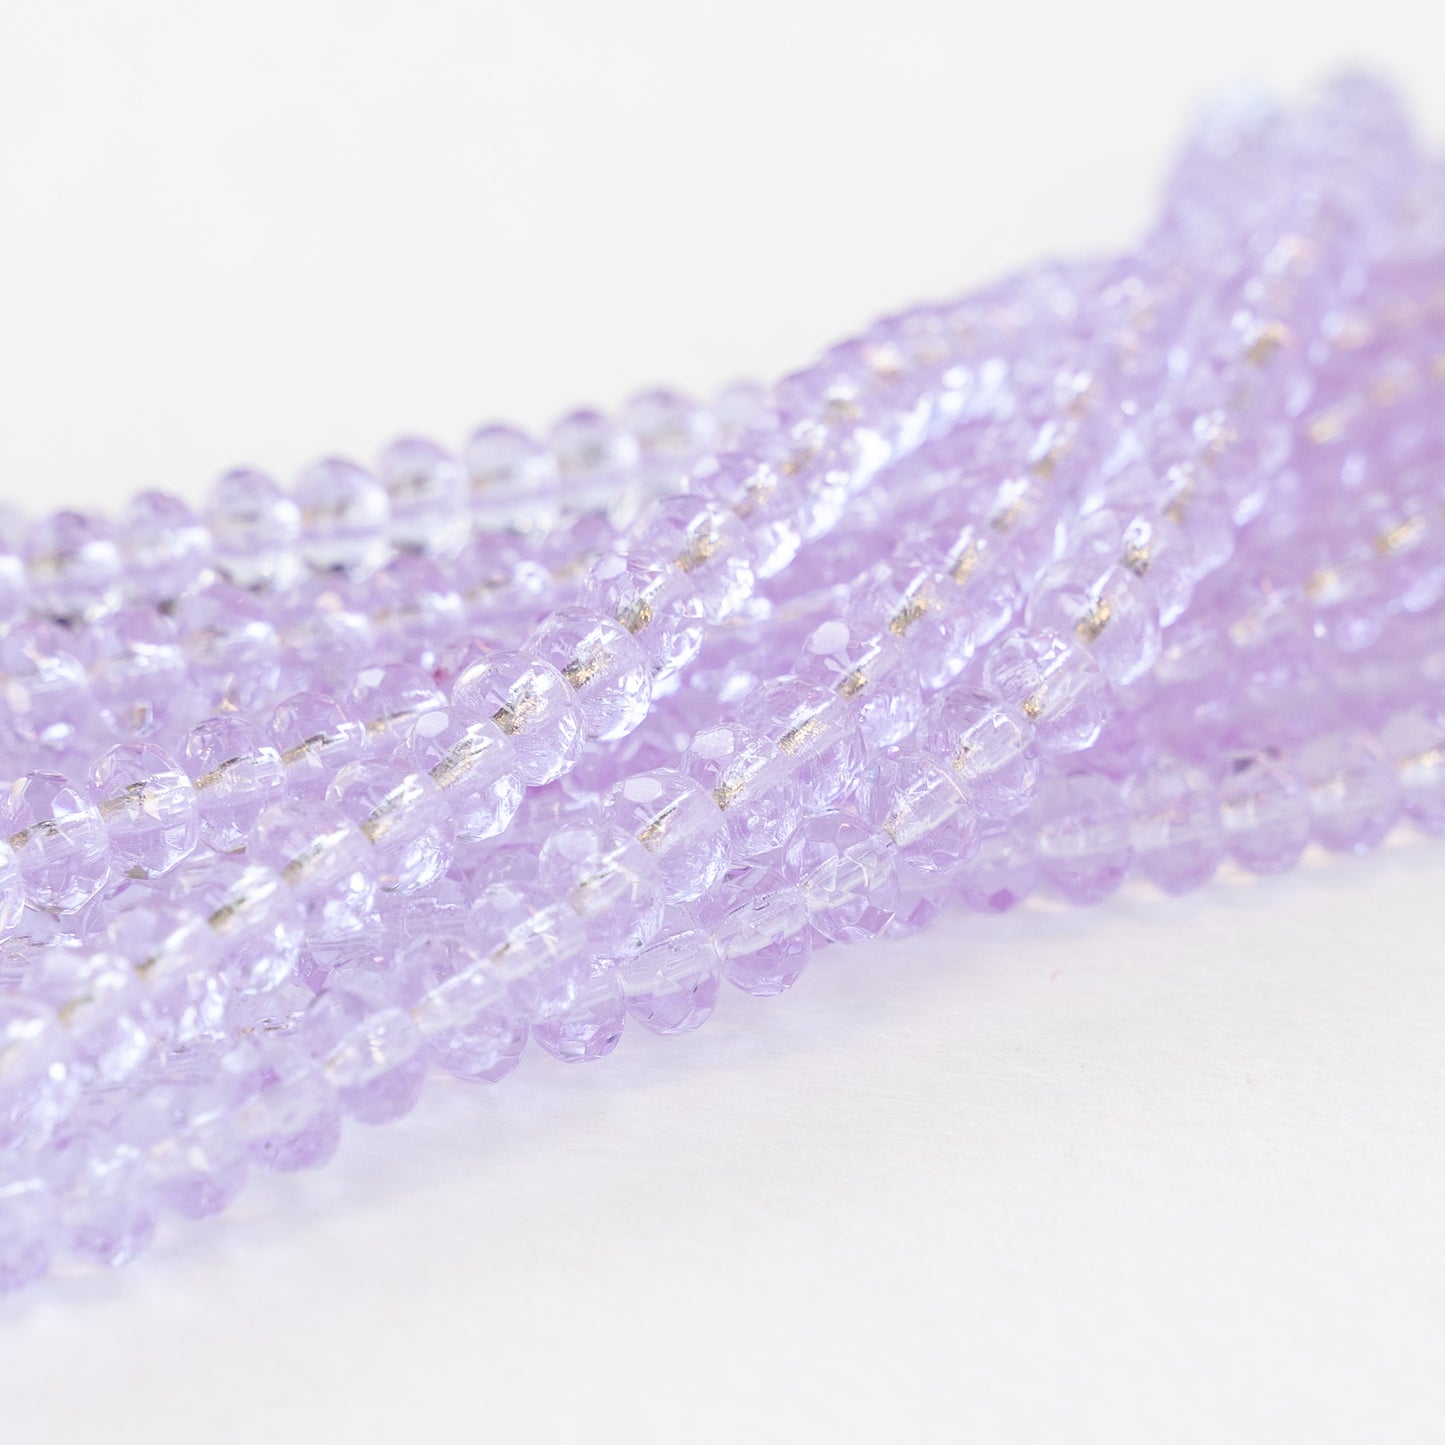 3x5mm Rondelle Beads -  Light Lavender  - 30 Beads